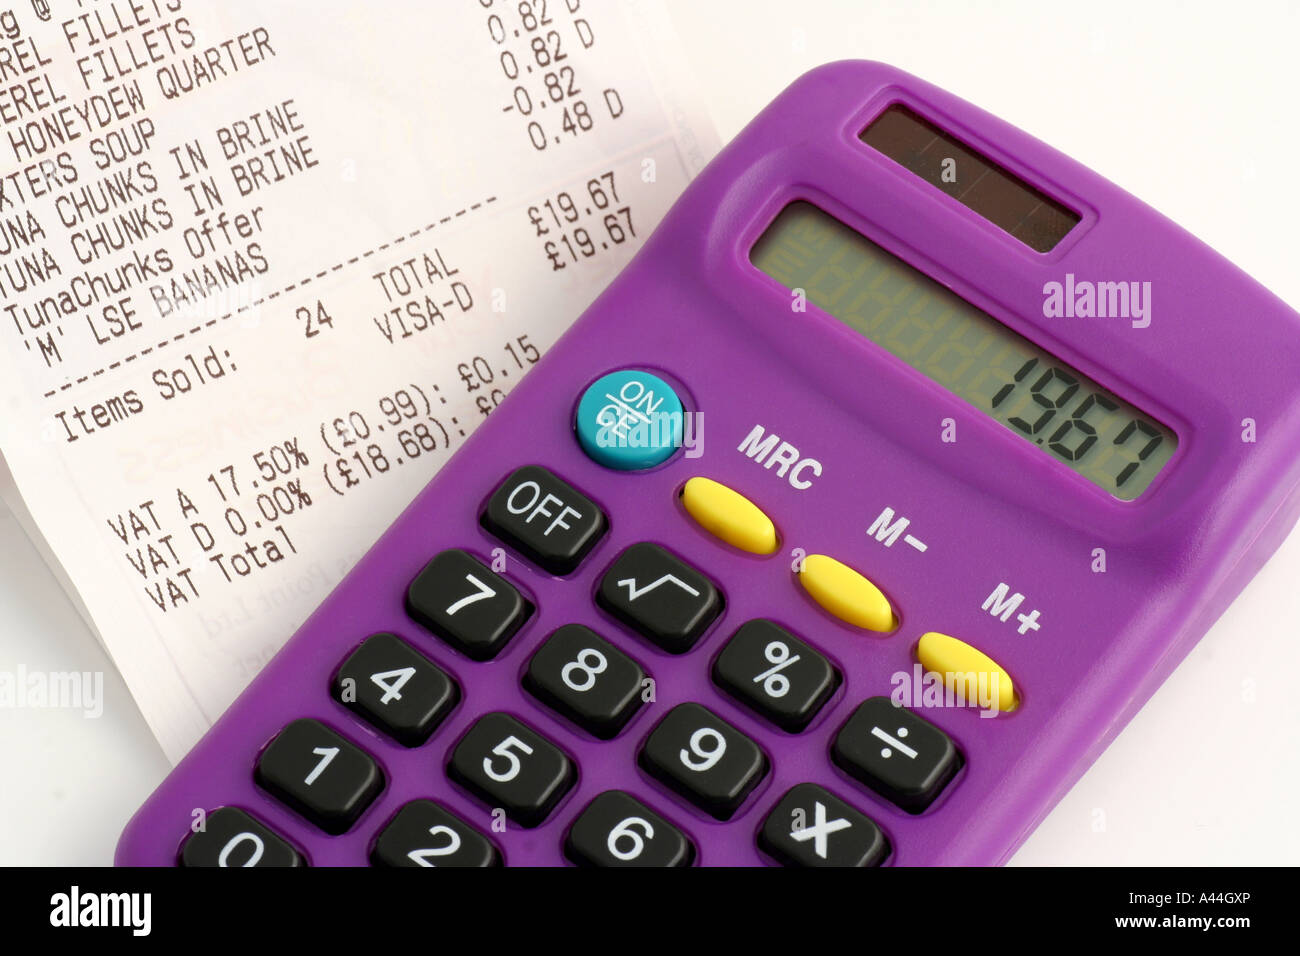 Calculatrice de poche et votre ticket de caisse Photo Stock - Alamy